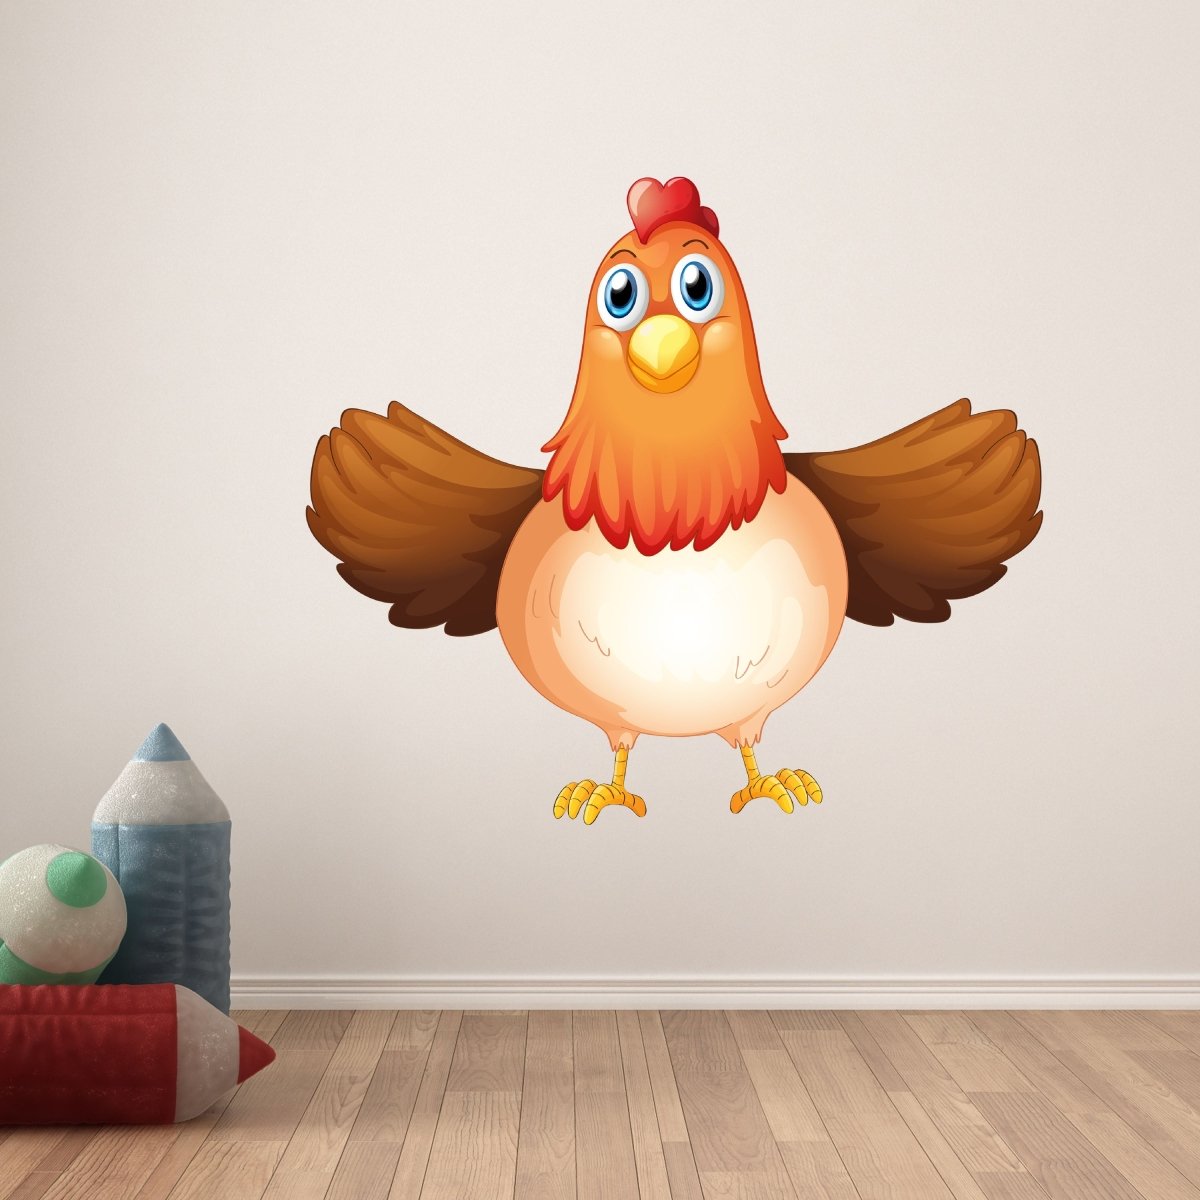 Wandsticker Huhn mit ausgebreiteten Flügeln, Hahn WS00000162 - Bild 6